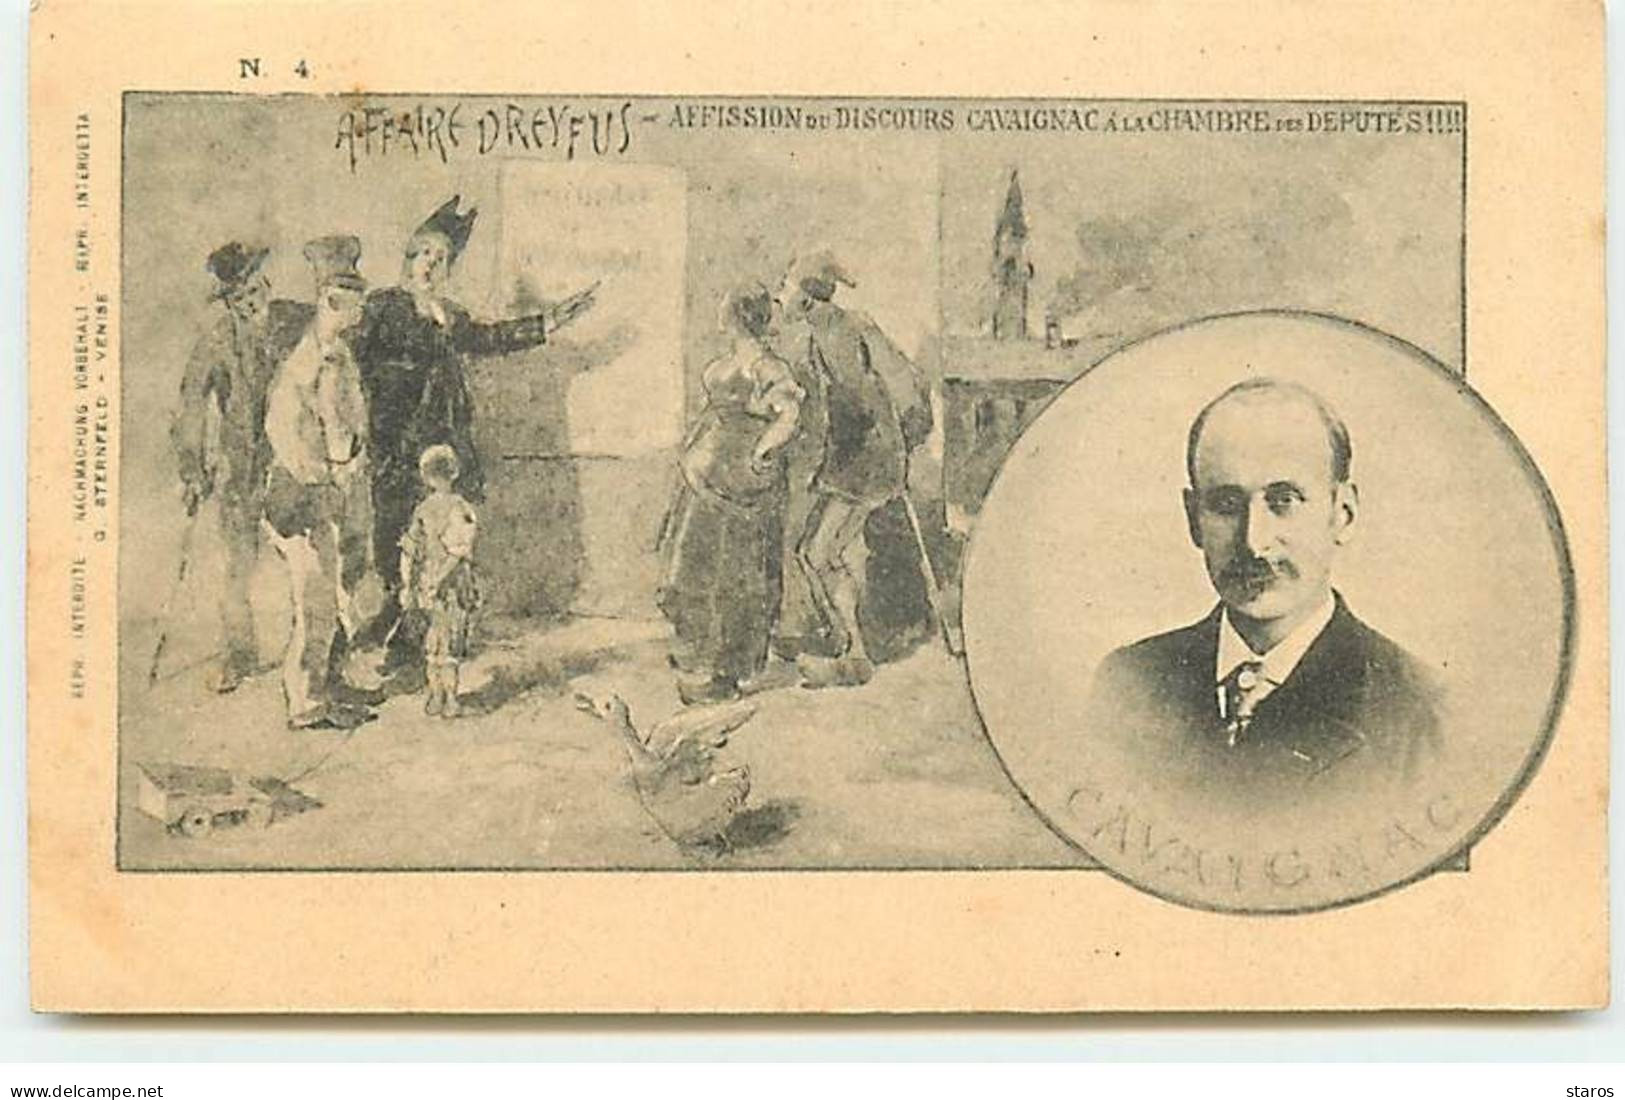 Politique - Affaire Dreyfus N°4 - Affission Du Discours Cavaignac A La Chambre Des Députés - Evènements